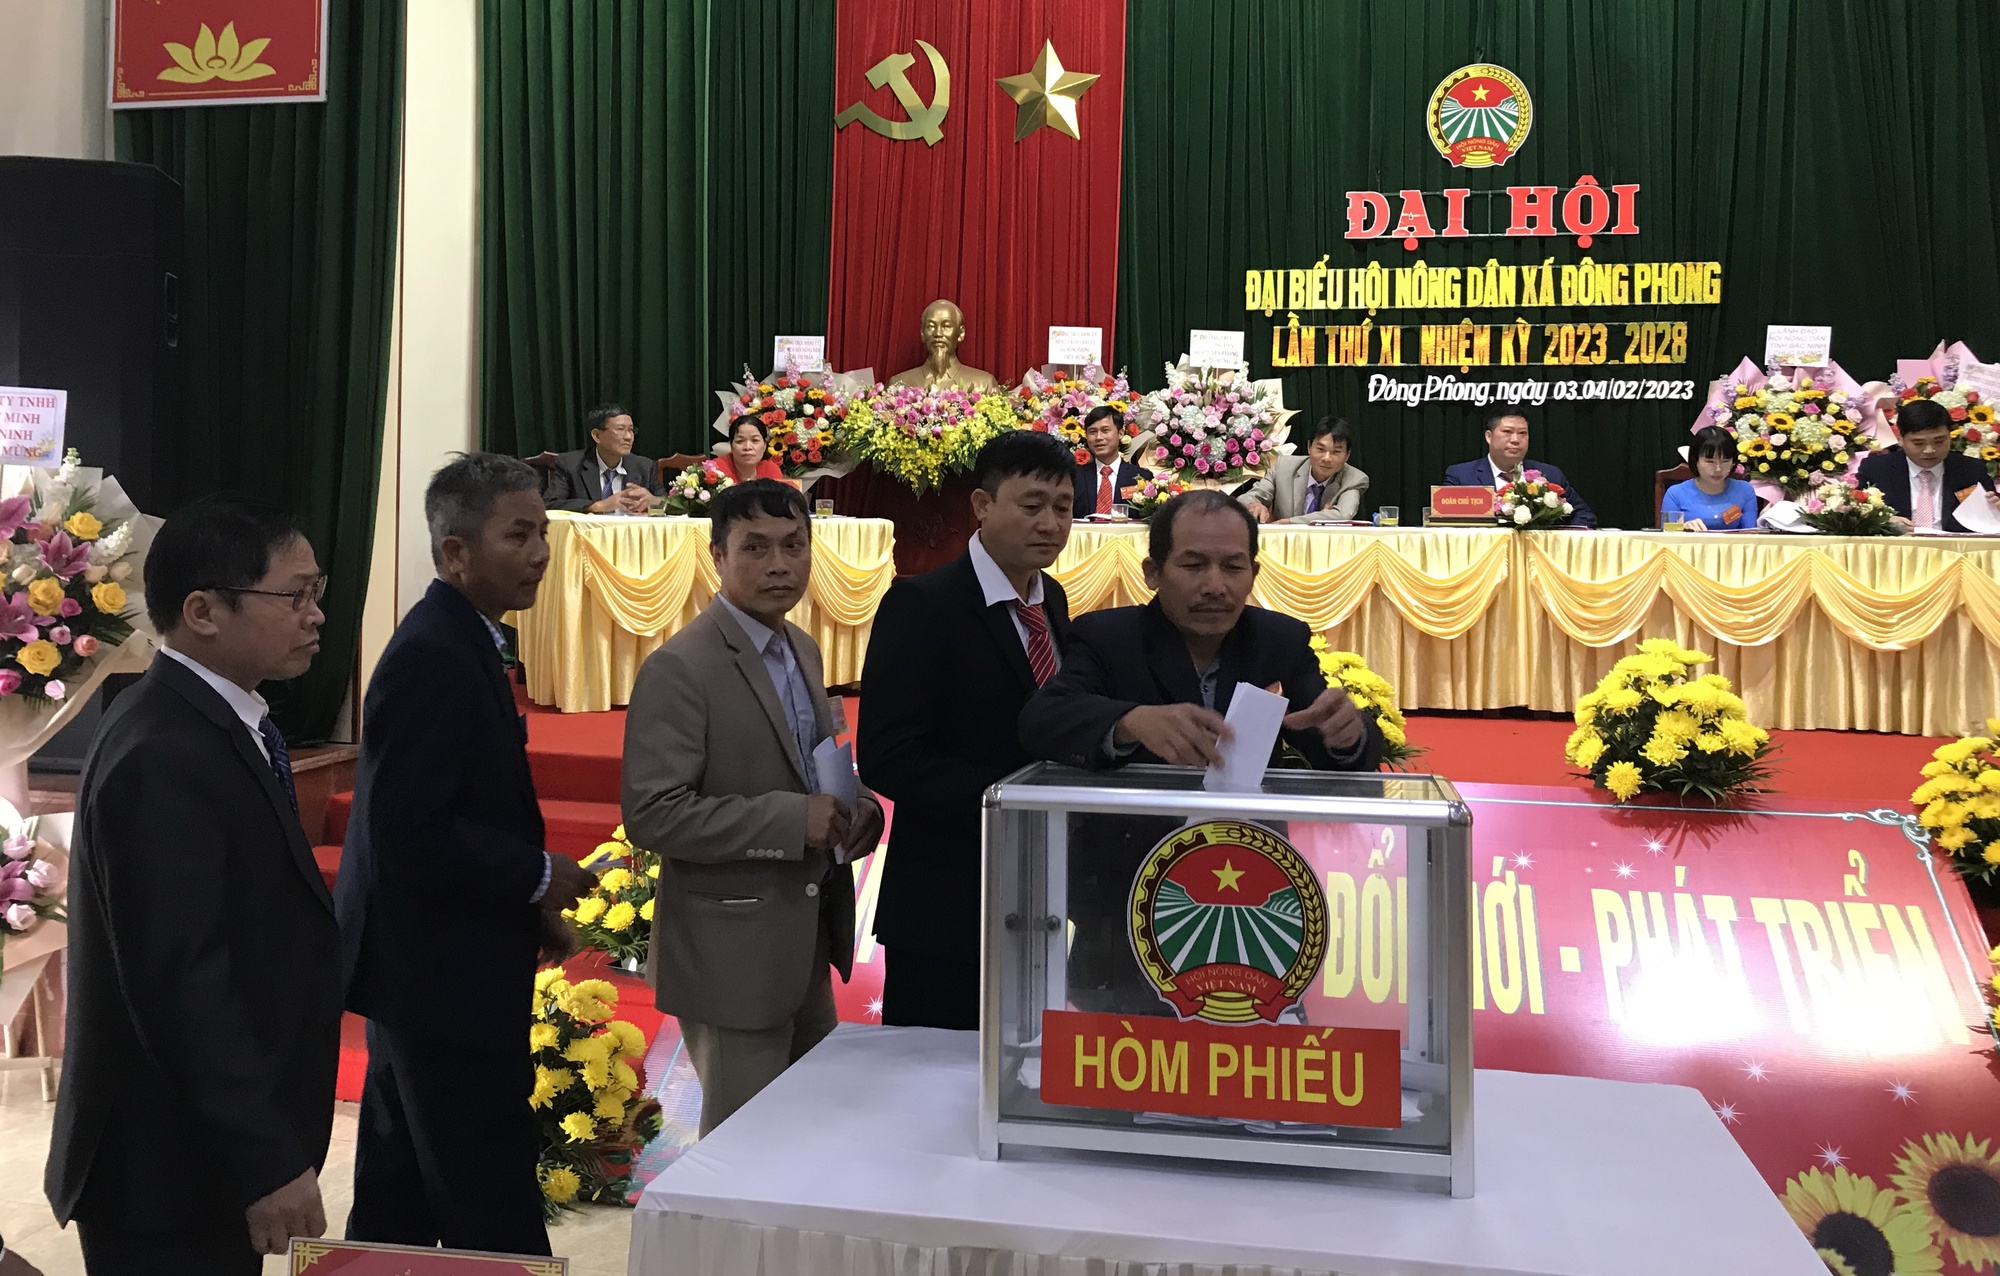 Bắc Ninh: Ghi nhận từ thành công Đại hội Hội Nông dân cấp cơ sở - Ảnh 2.